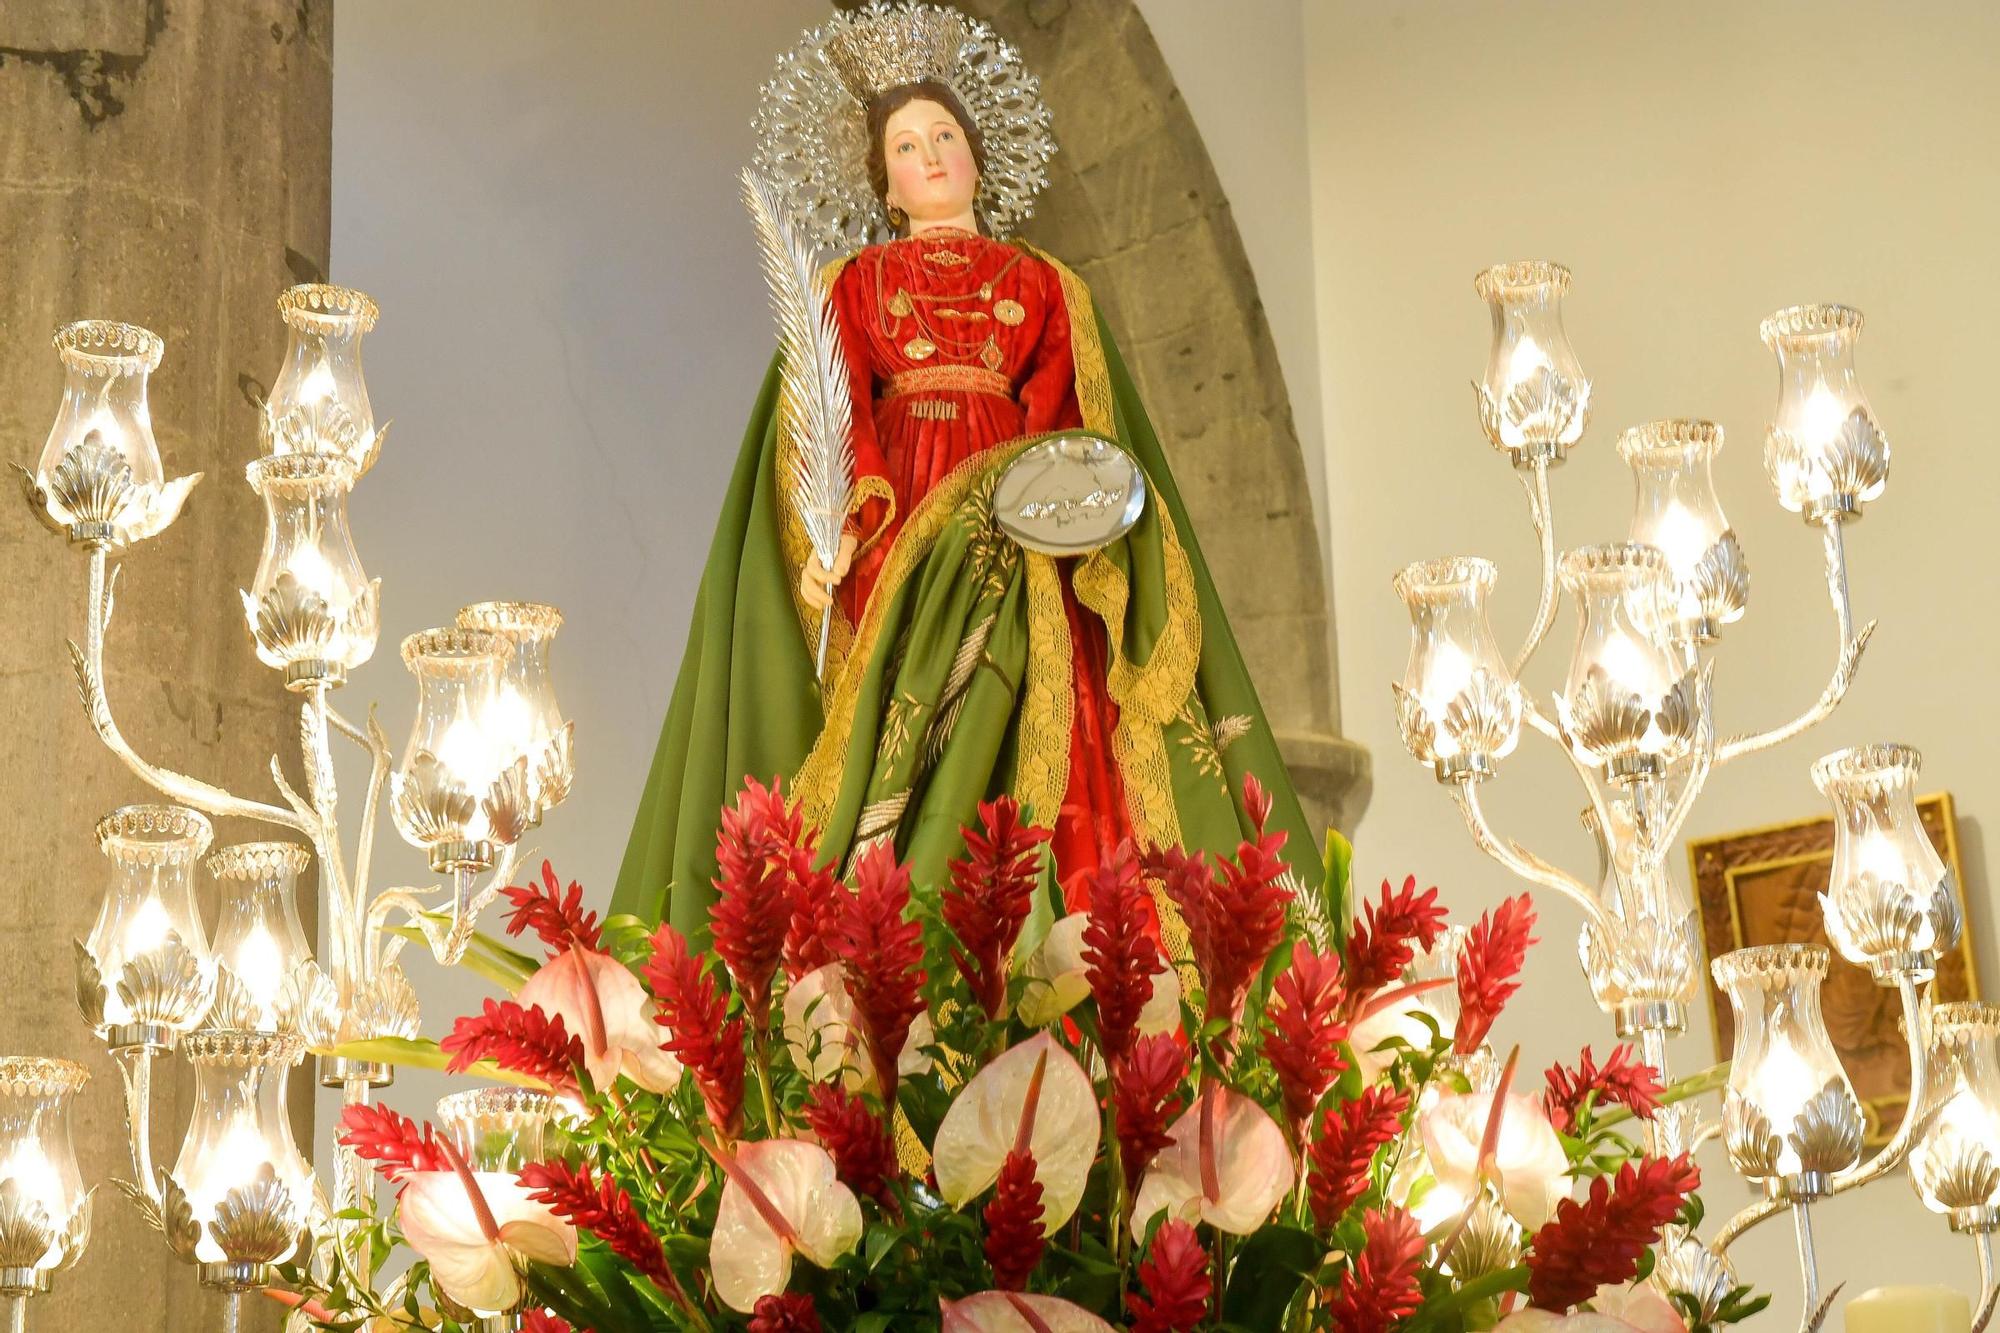 Fiesta patronal de Santa Lucía